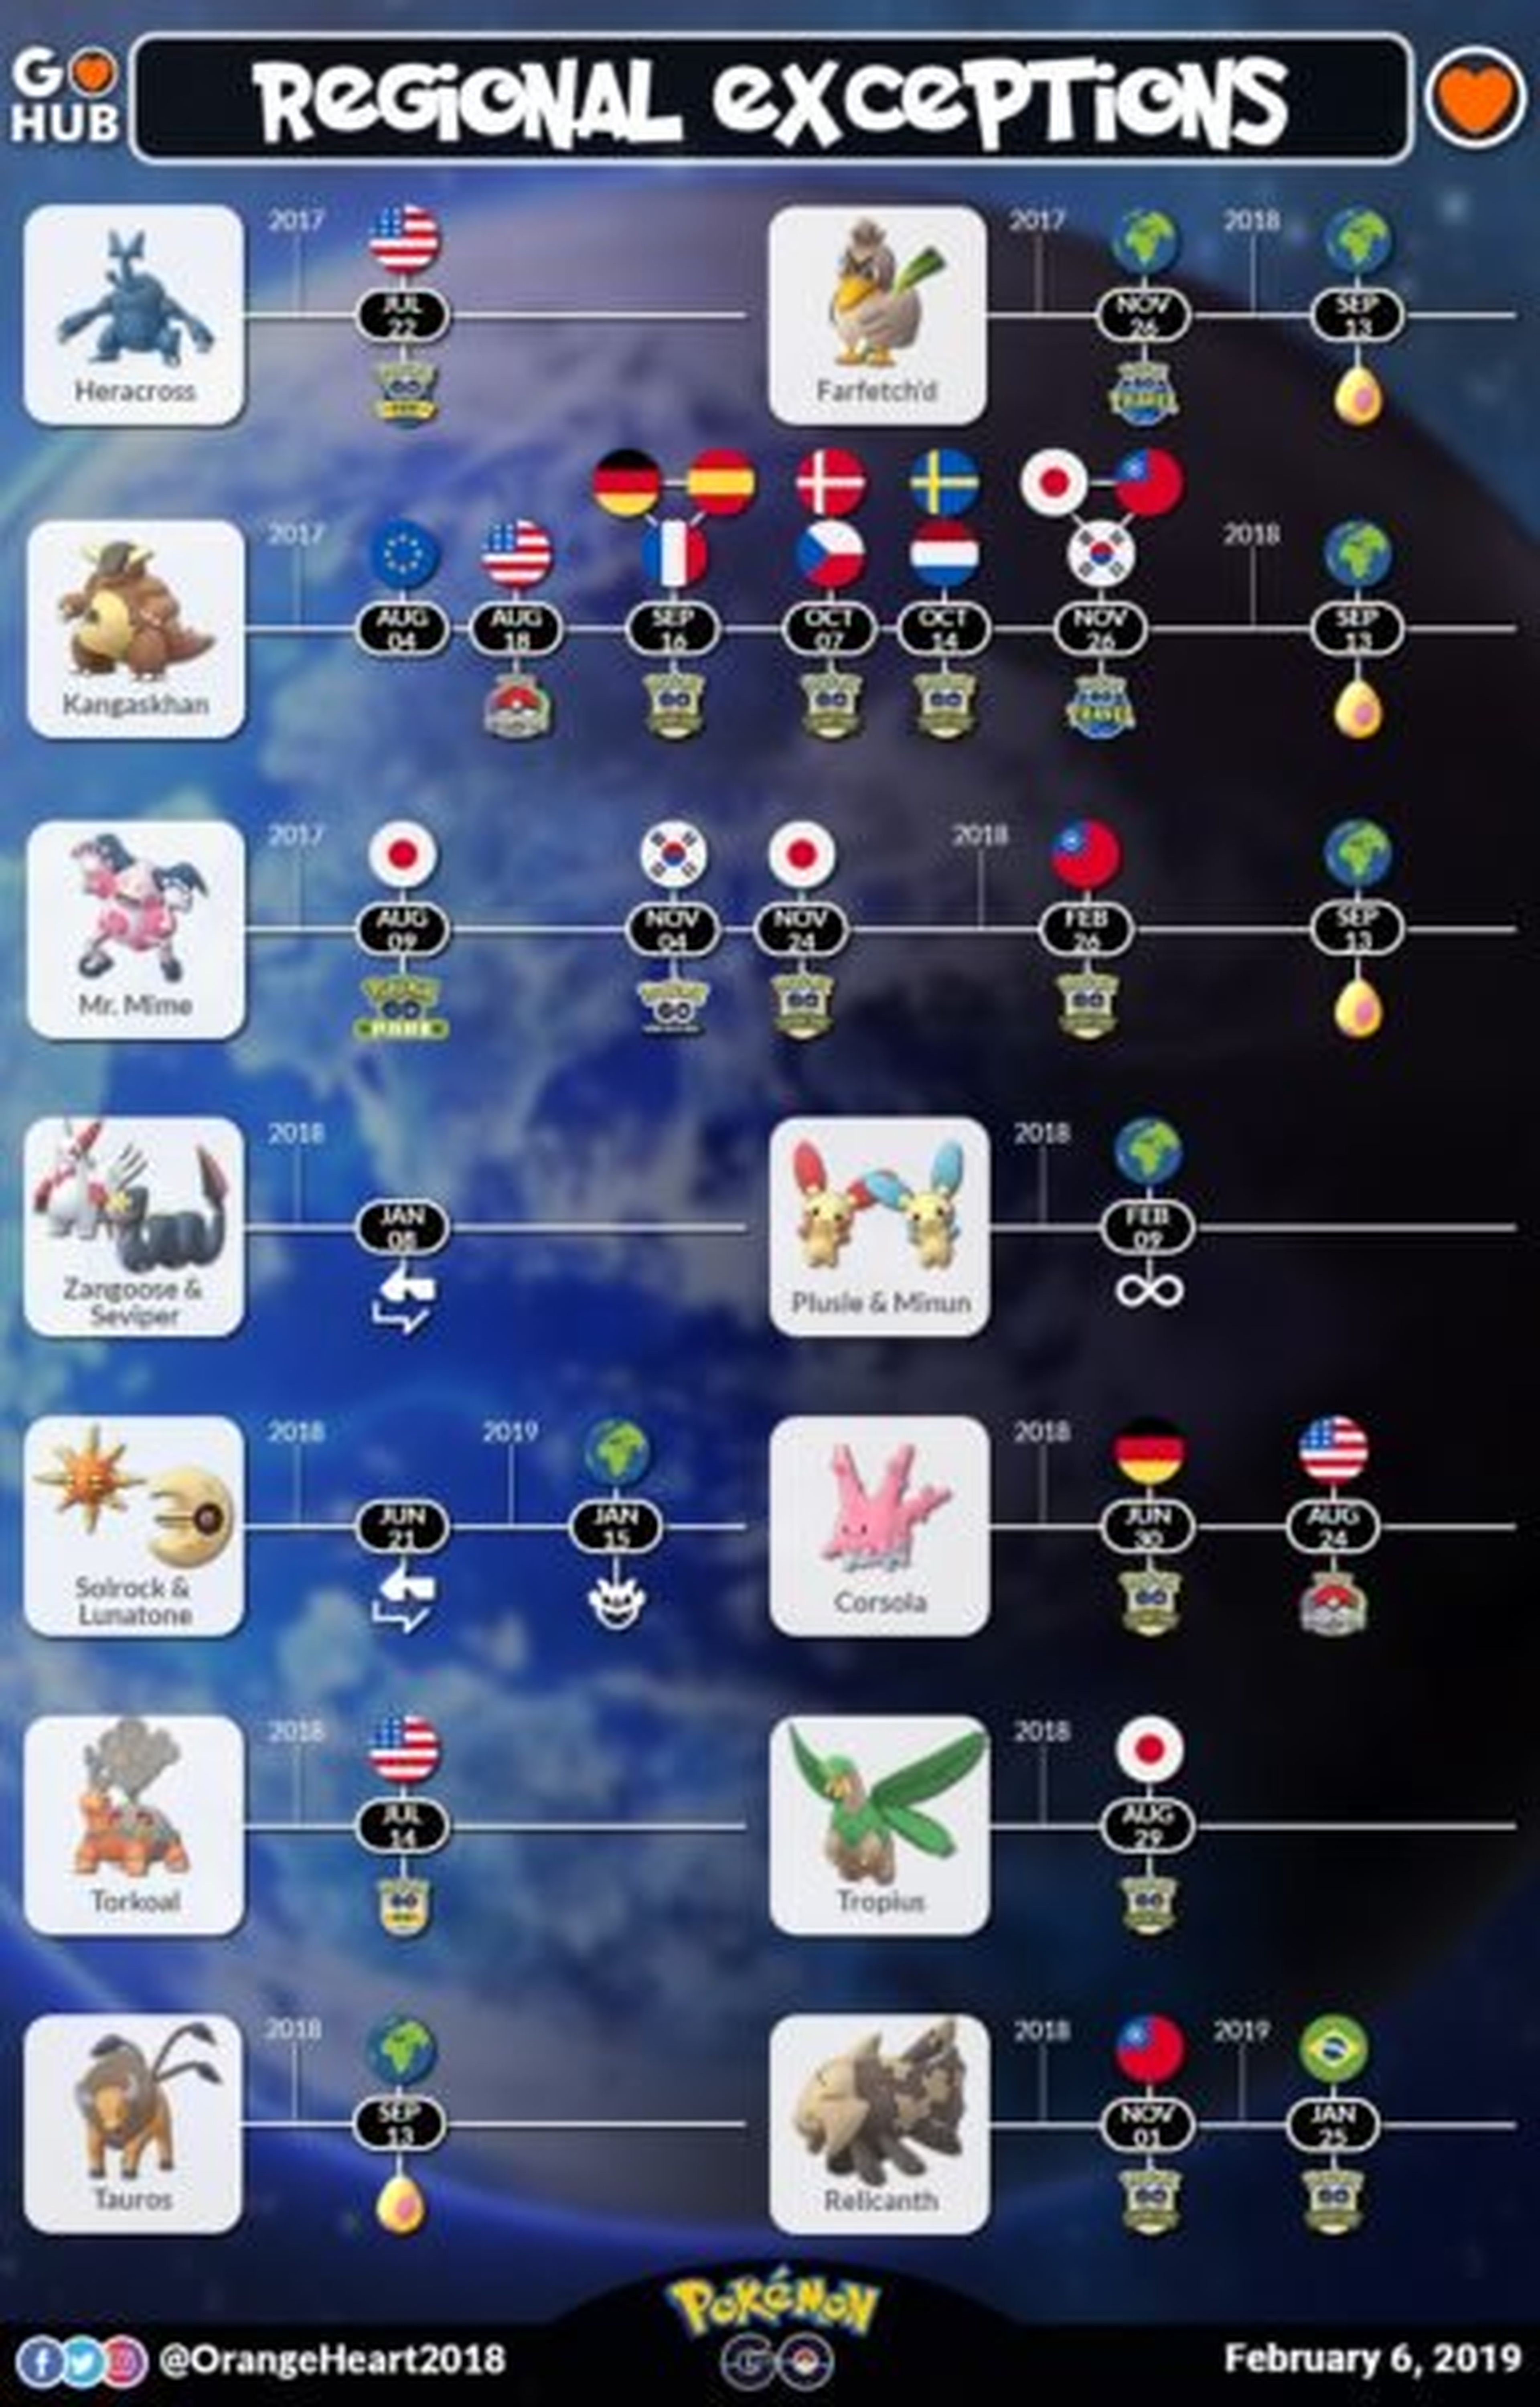 Go regions. Региональные покемоны в Pokemon. Покемон го региональные покемоны. Региональные покемоны в Pokemon go. Карта региональных покемонов.